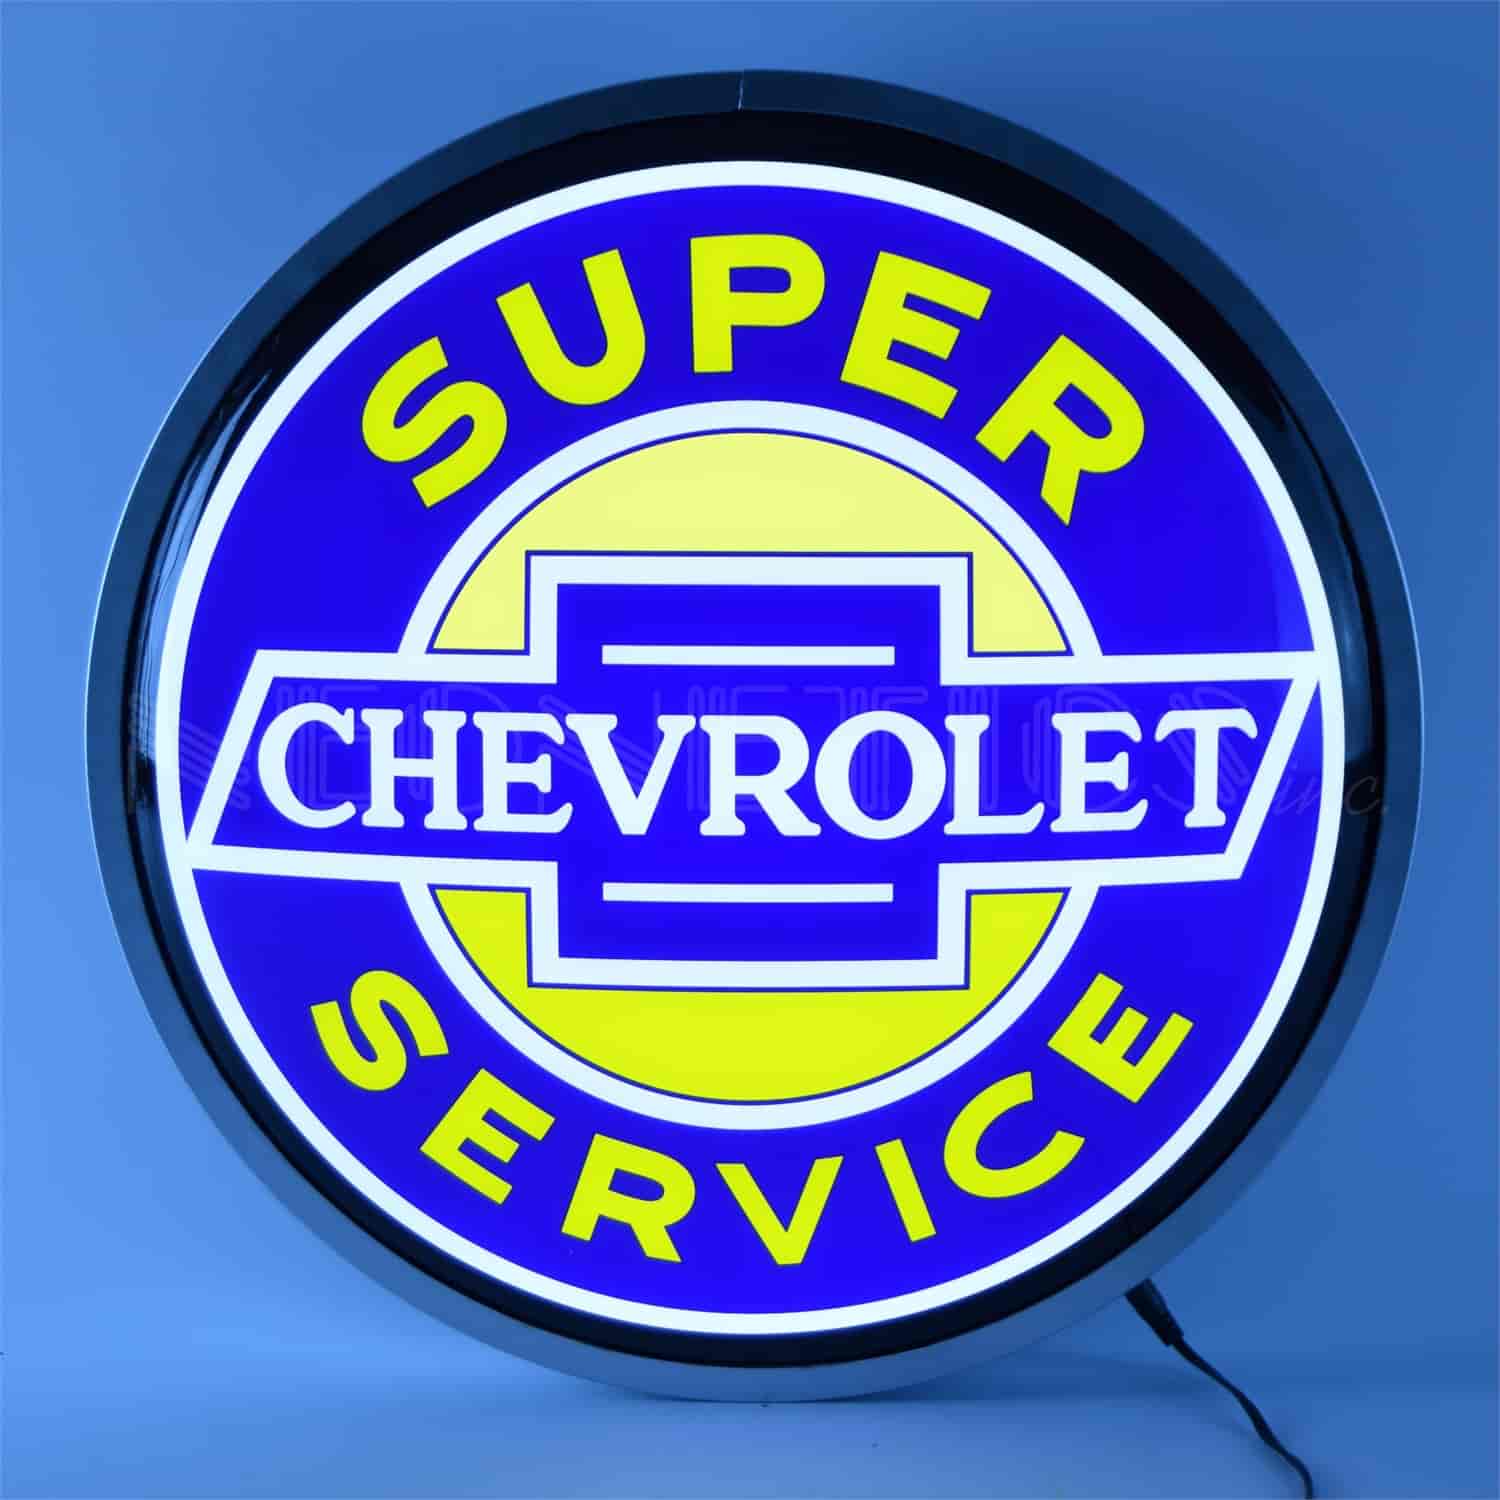 Backlit LED Lighted Round Sign Super Chevrolet Service